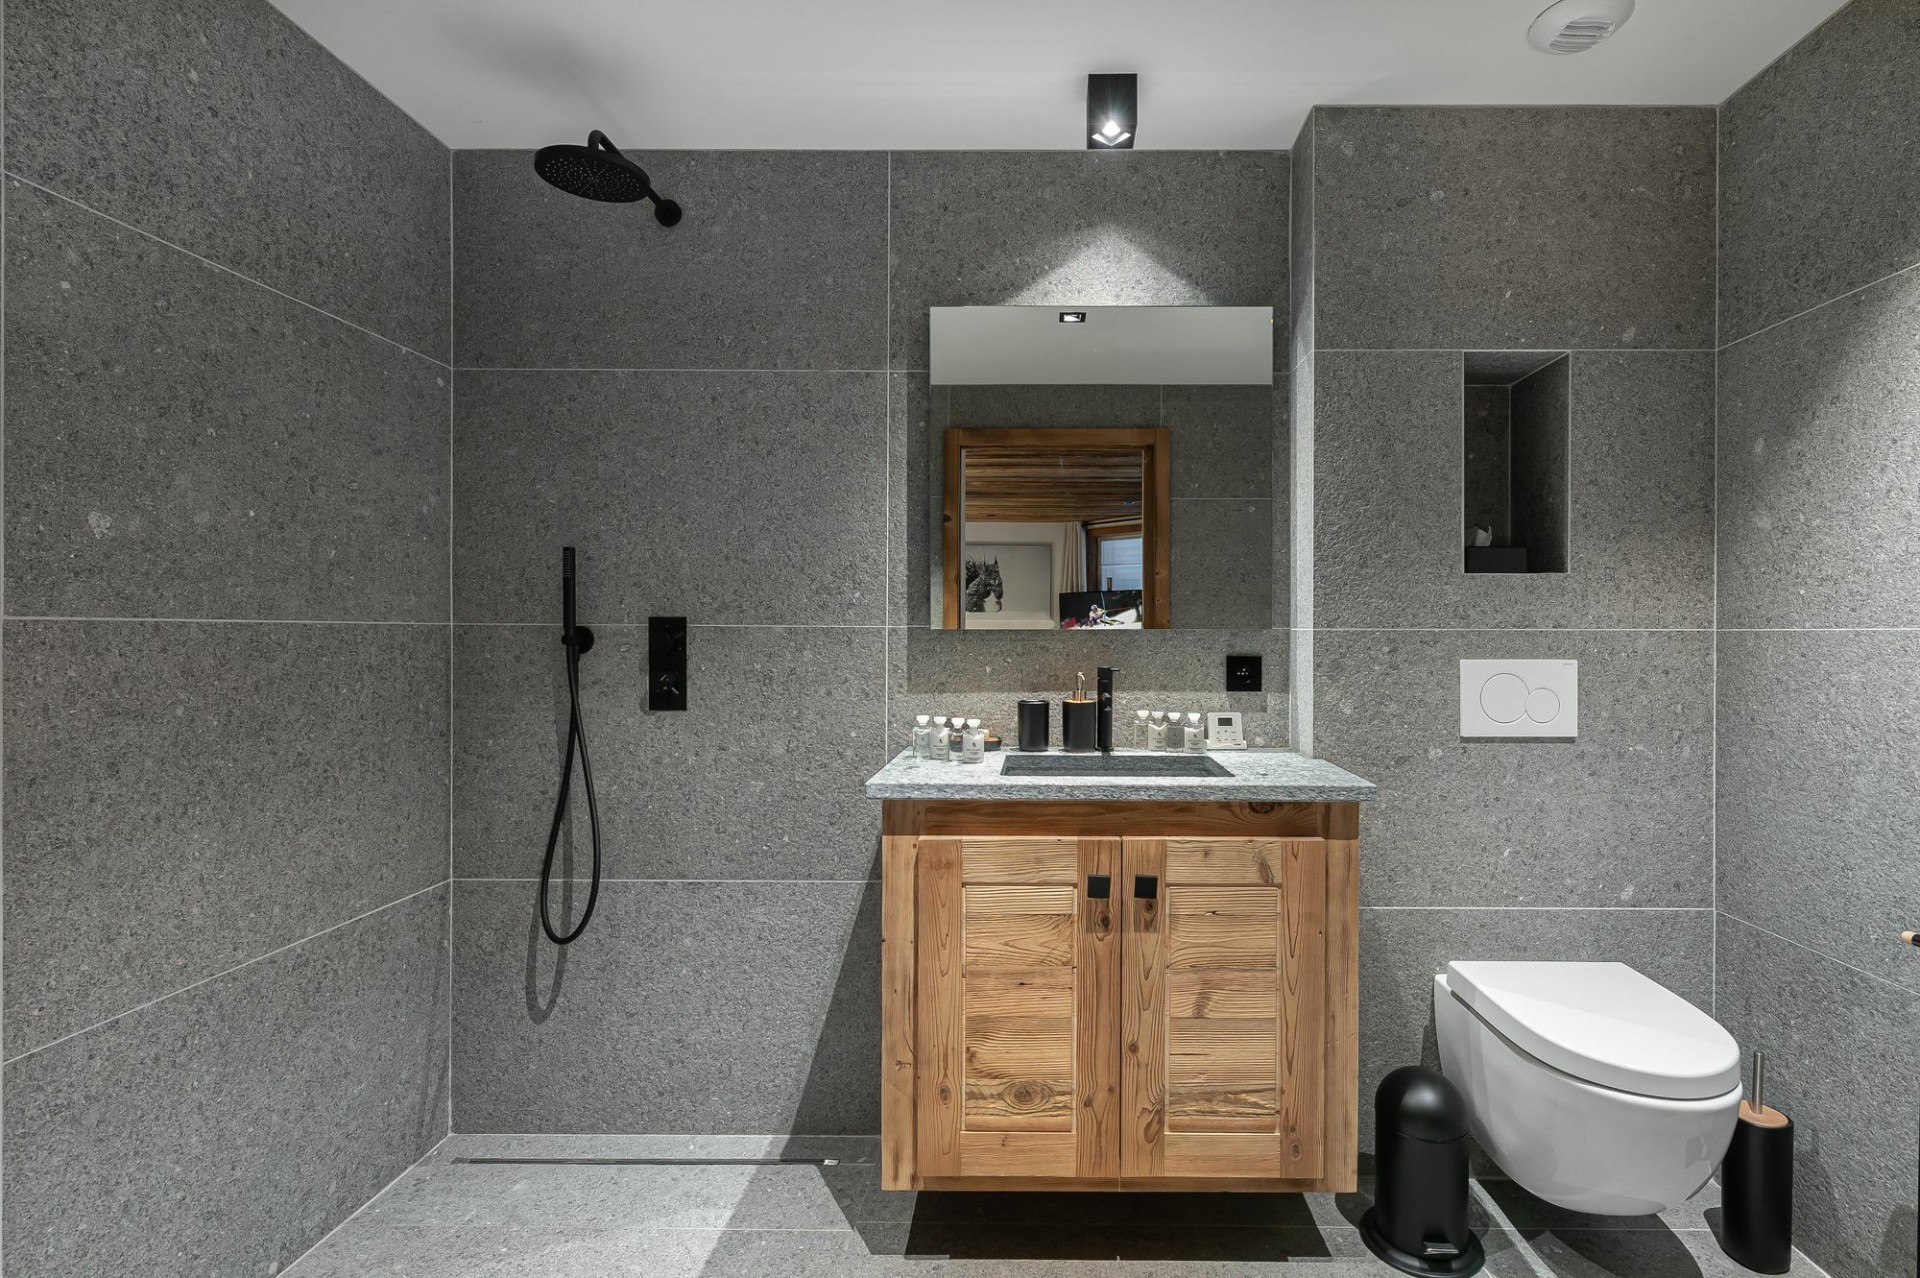 Courchevel Luxury Rental Chalet Nuummite Shower Room